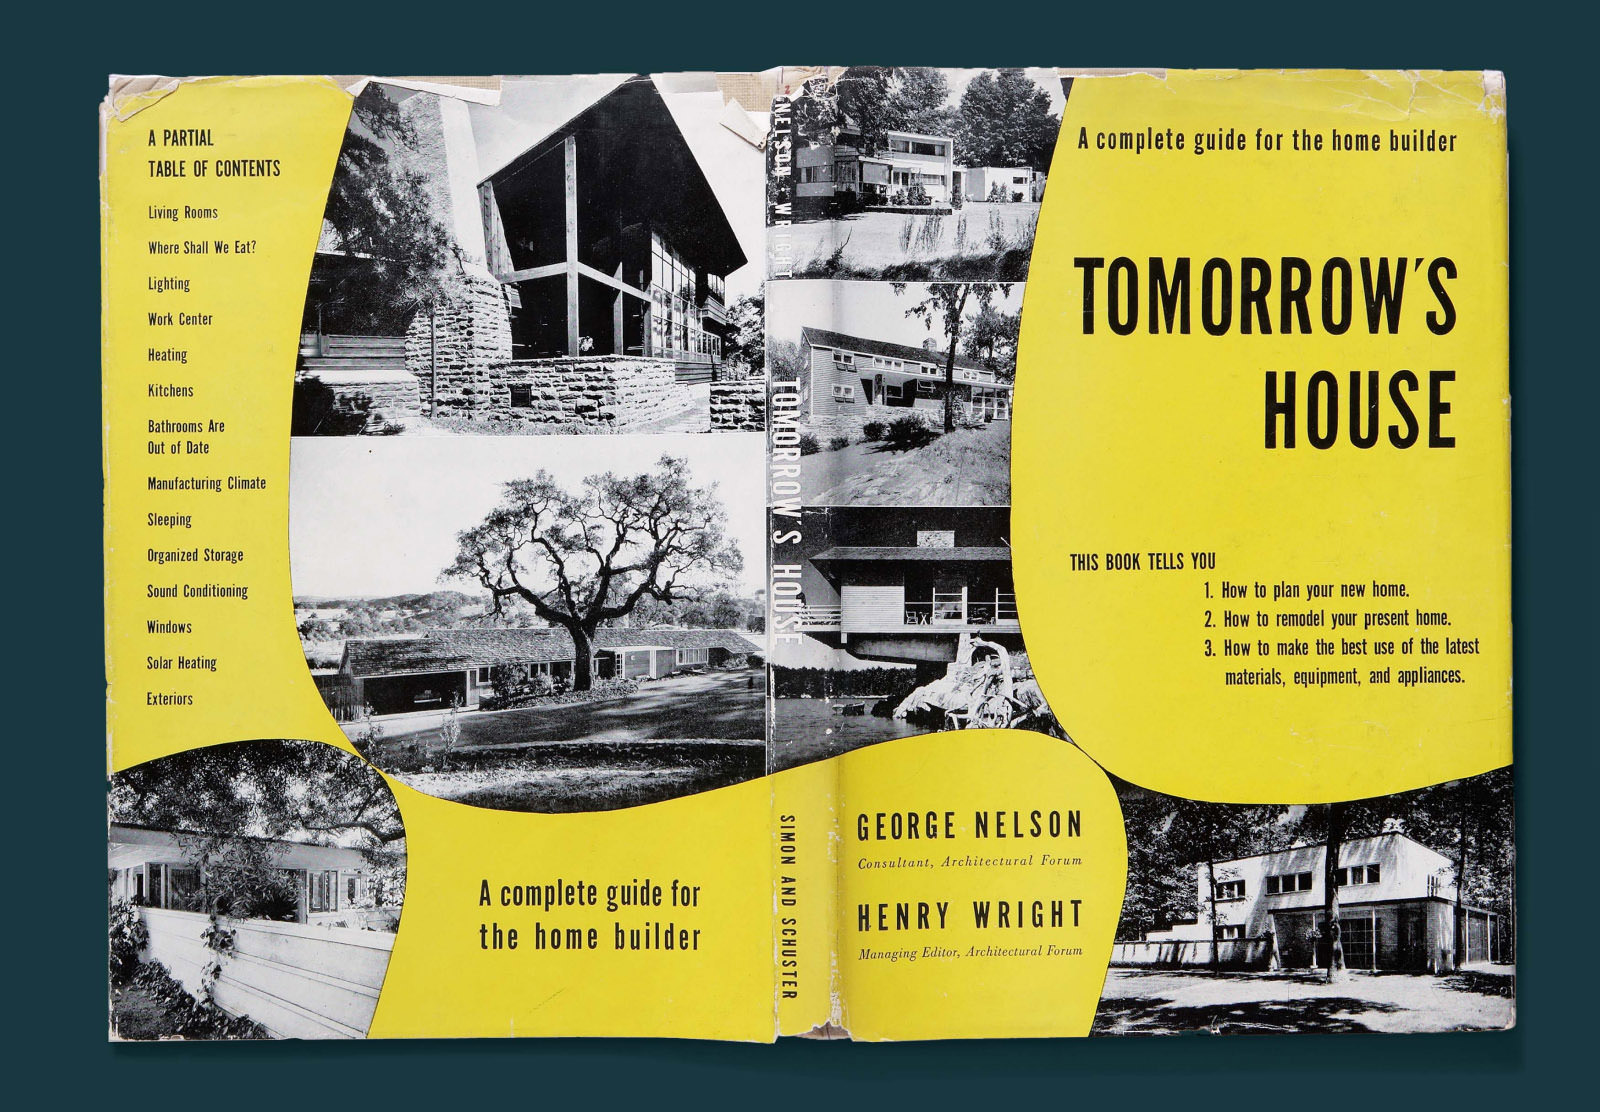 Capa e contracapa do livro Tomorrow's House com o título, autor e sumário em preto, posicionados em um plano de fundo amarelo irregular com fotos em preto e branco de casas modernistas.